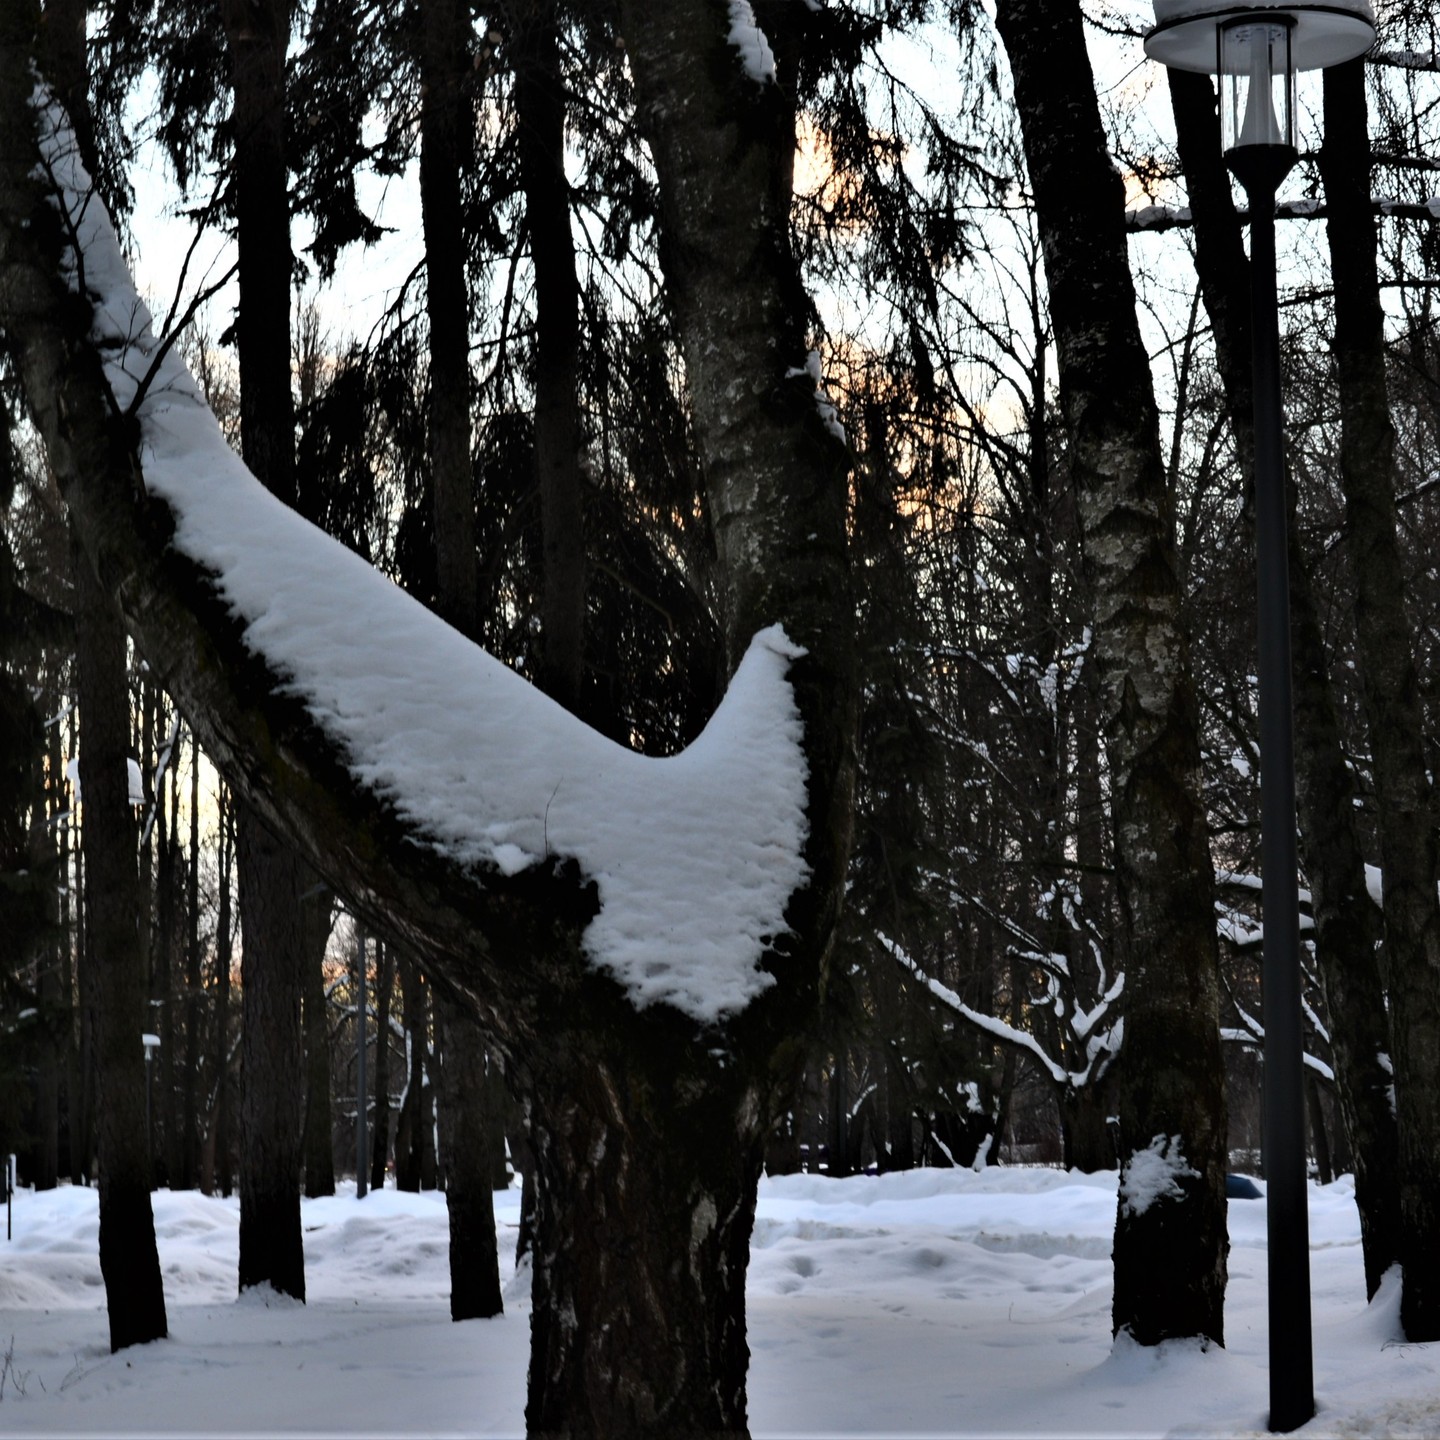 Снежный голубь мира в парке Дружба г. Москвы, что рядом со станций метро Речной вокзал.
Это знак! Все будет хорошо и мирно. И другого быть не должно ❤️